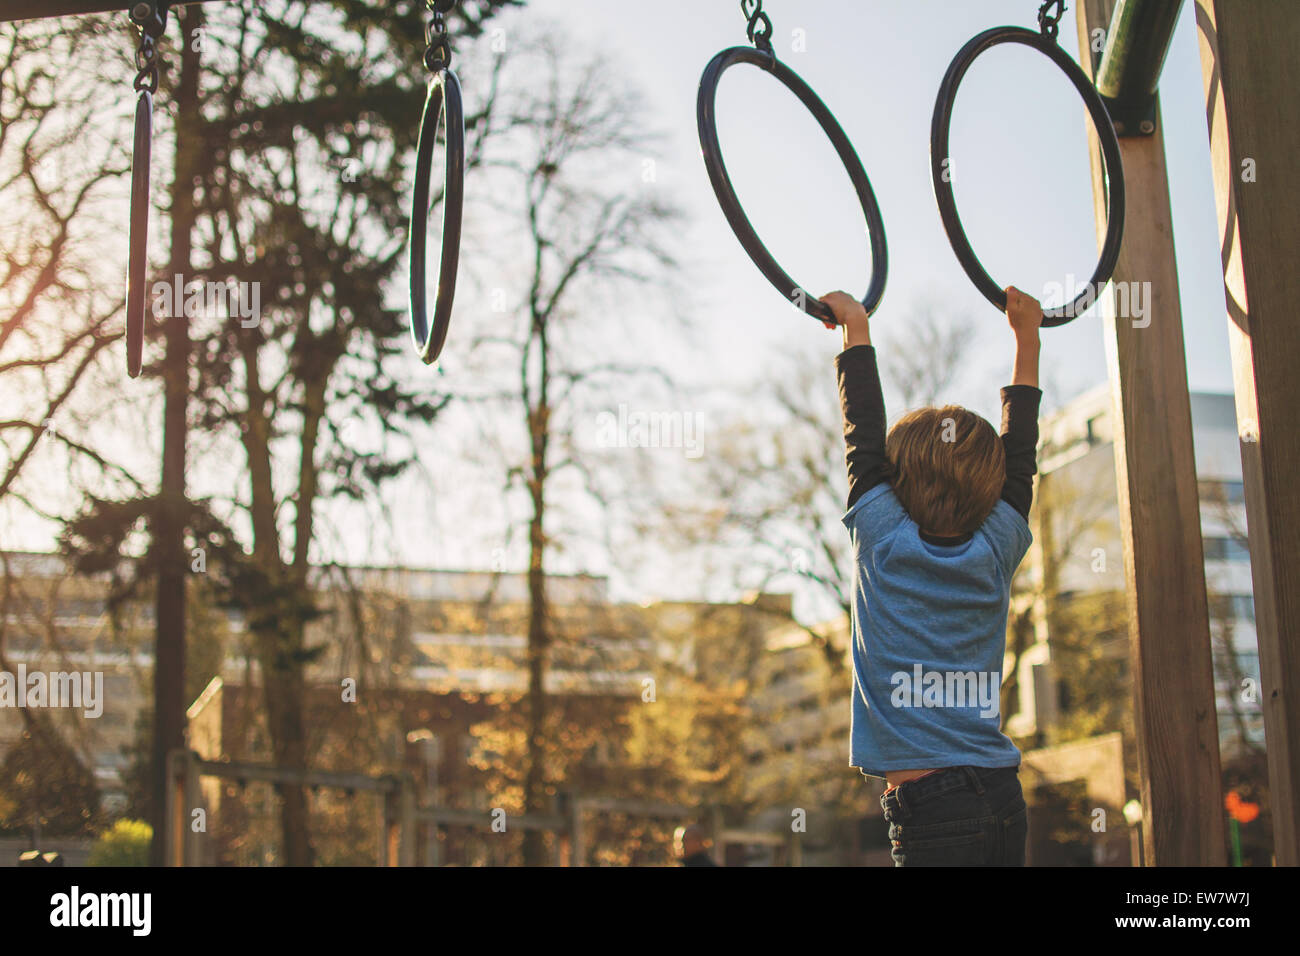 Junge hängt von Ringen auf dem Spielplatz, USA Stockfoto